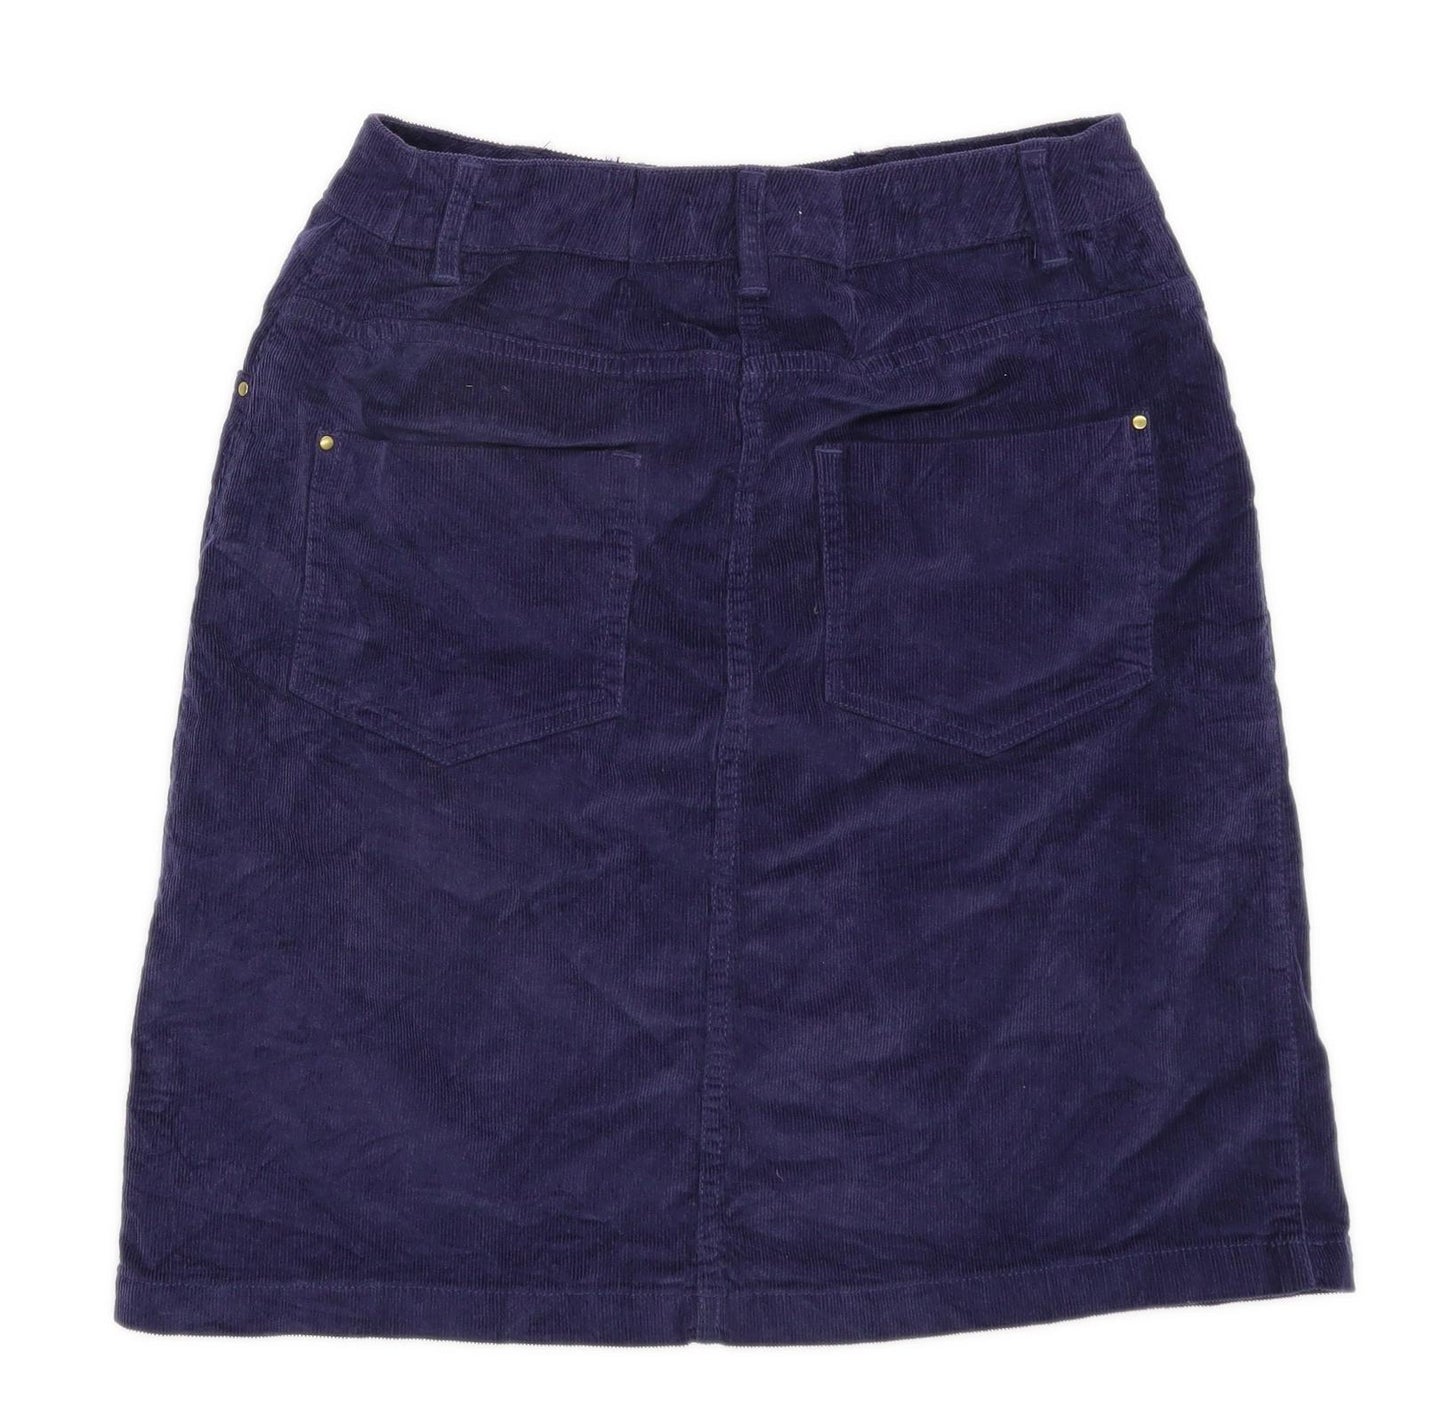 Matalan Womens Size 8 Corduroy Blend Blue A-Line Skirt (Regular)